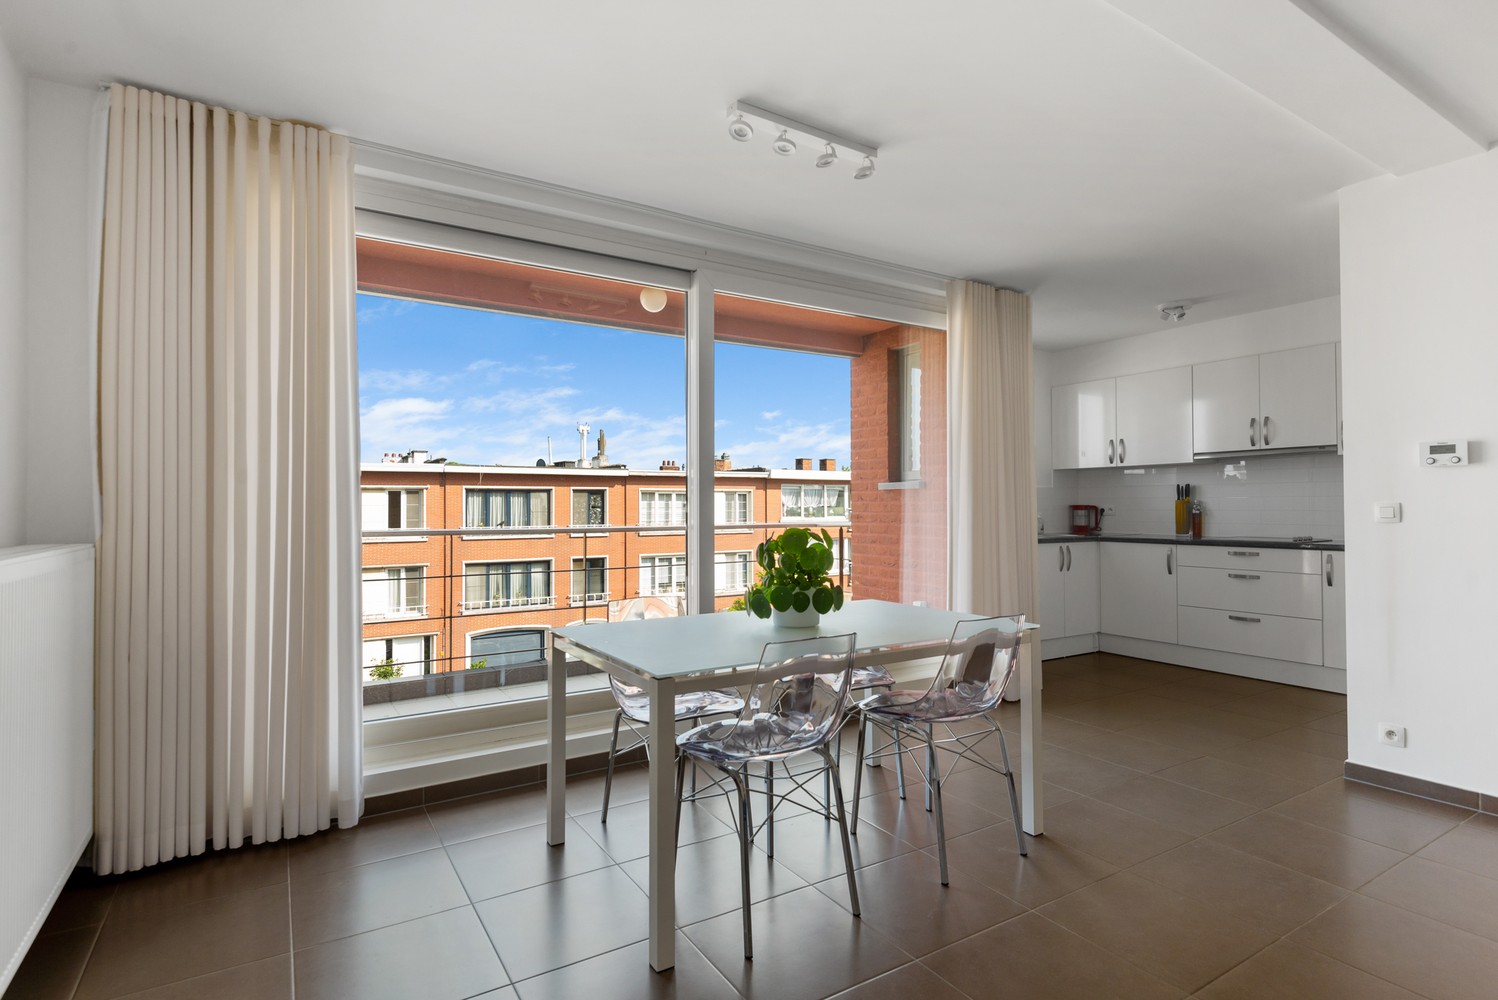 Ruim, lichtrijk & energiezuinig appartement met 2 slaapkamers & zonnig terras in Deurne! afbeelding 6